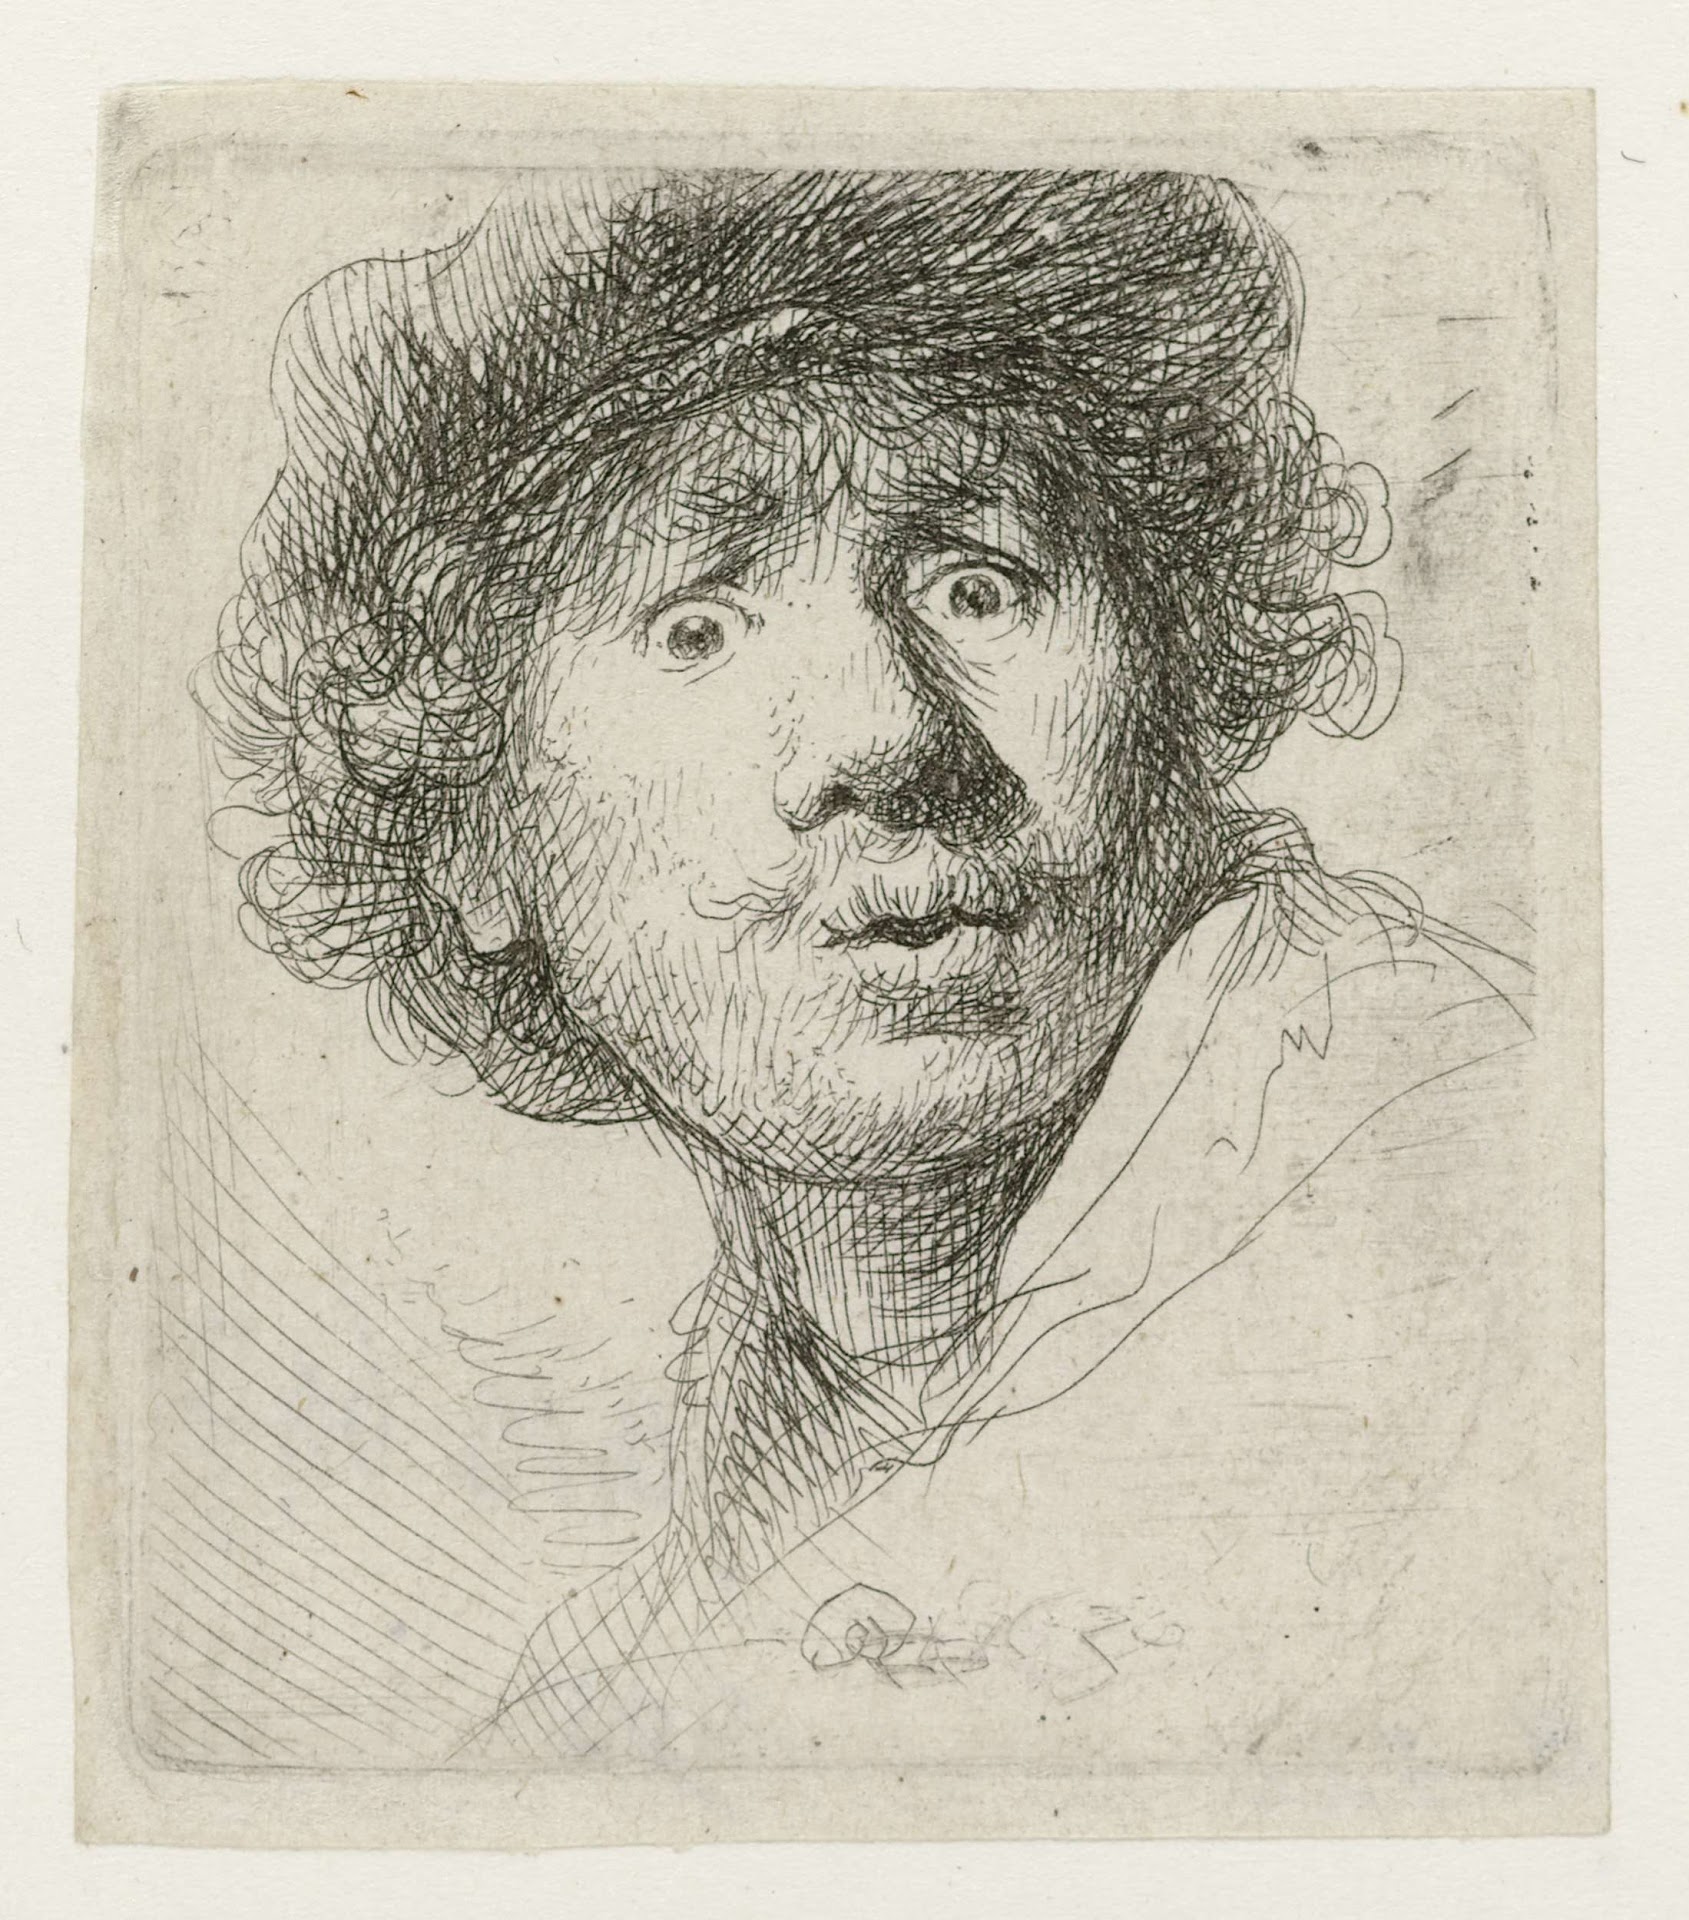 自画像，戴帽，睁大眼睛，张着嘴 by 伦勃朗· 范·莱因 - 1630 - 50 x 45mm 